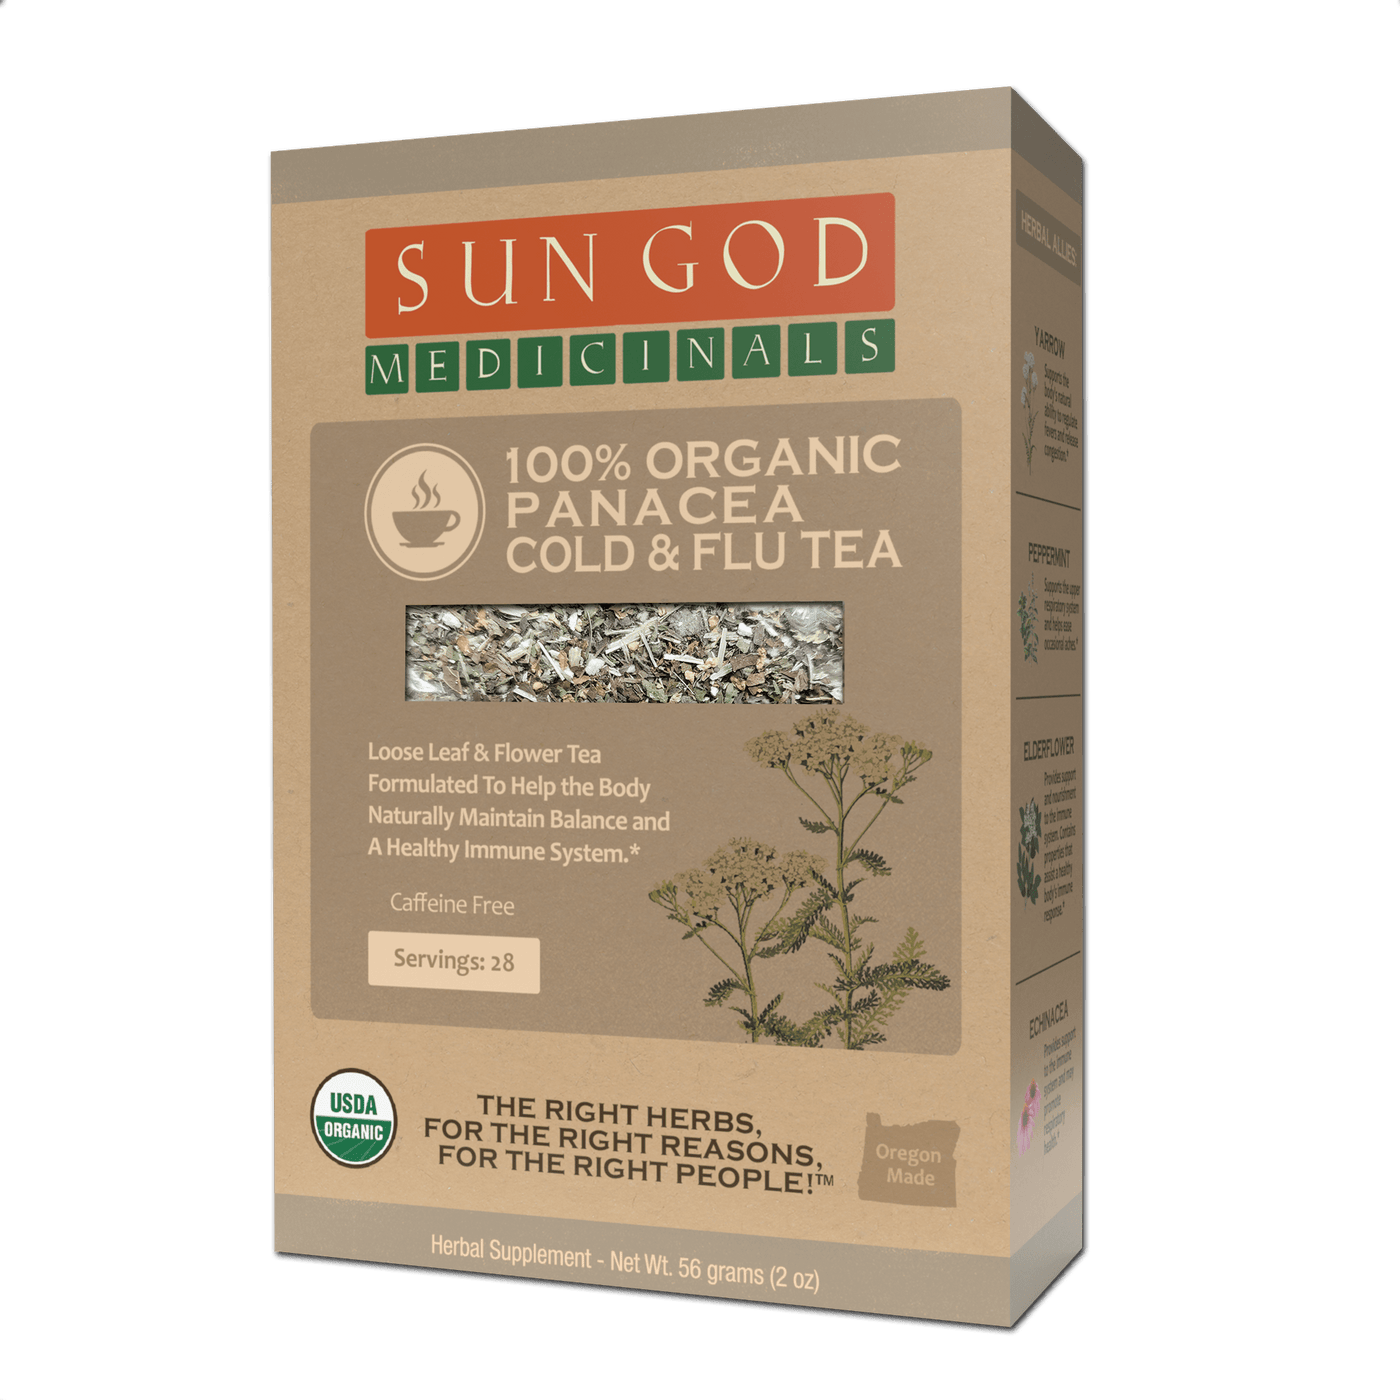 Panacea Cold & Flu Organic Herbal Tea - Sun God Medicinals